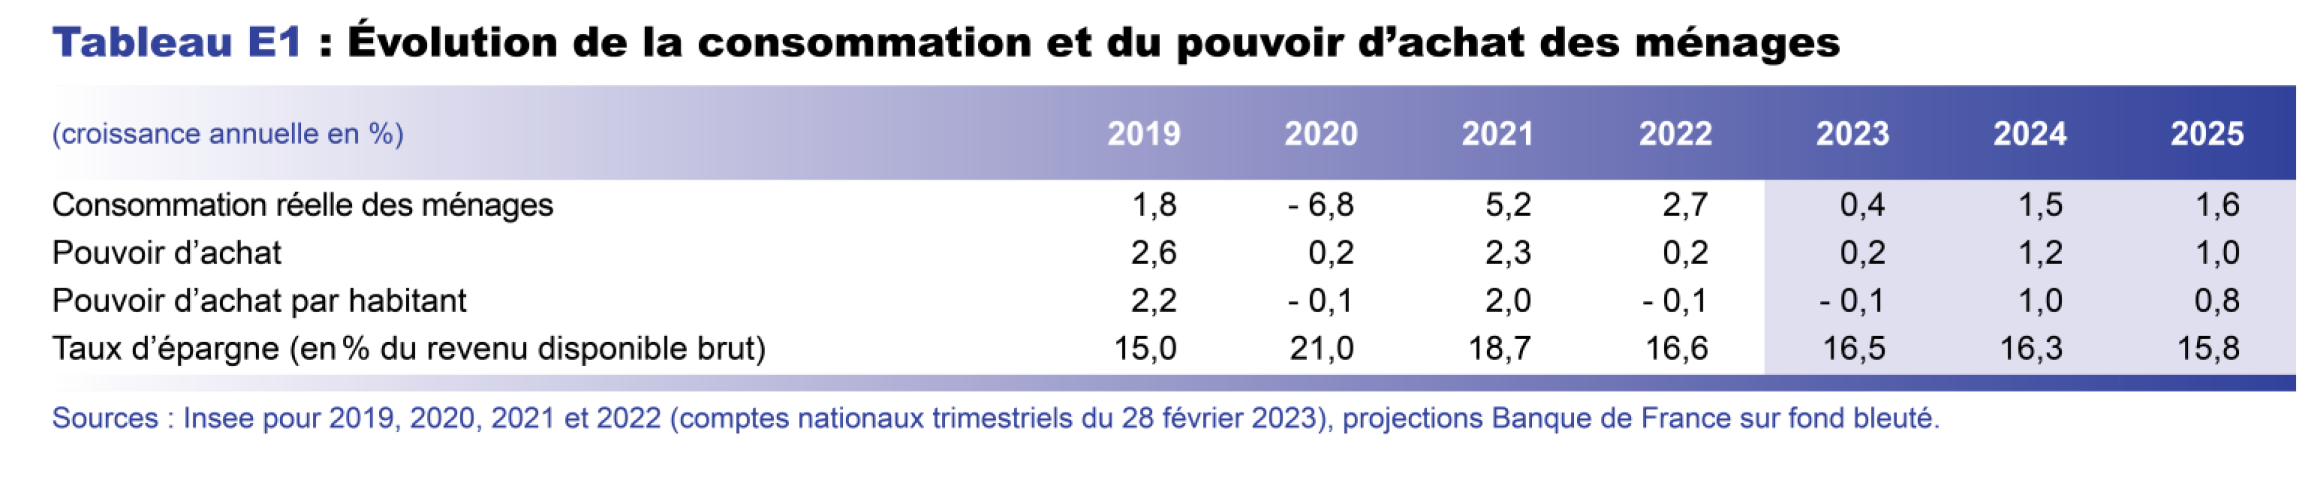 Projection macro mars 2023 - Evolution de la consommation et du pouvoir d'achat des ménages